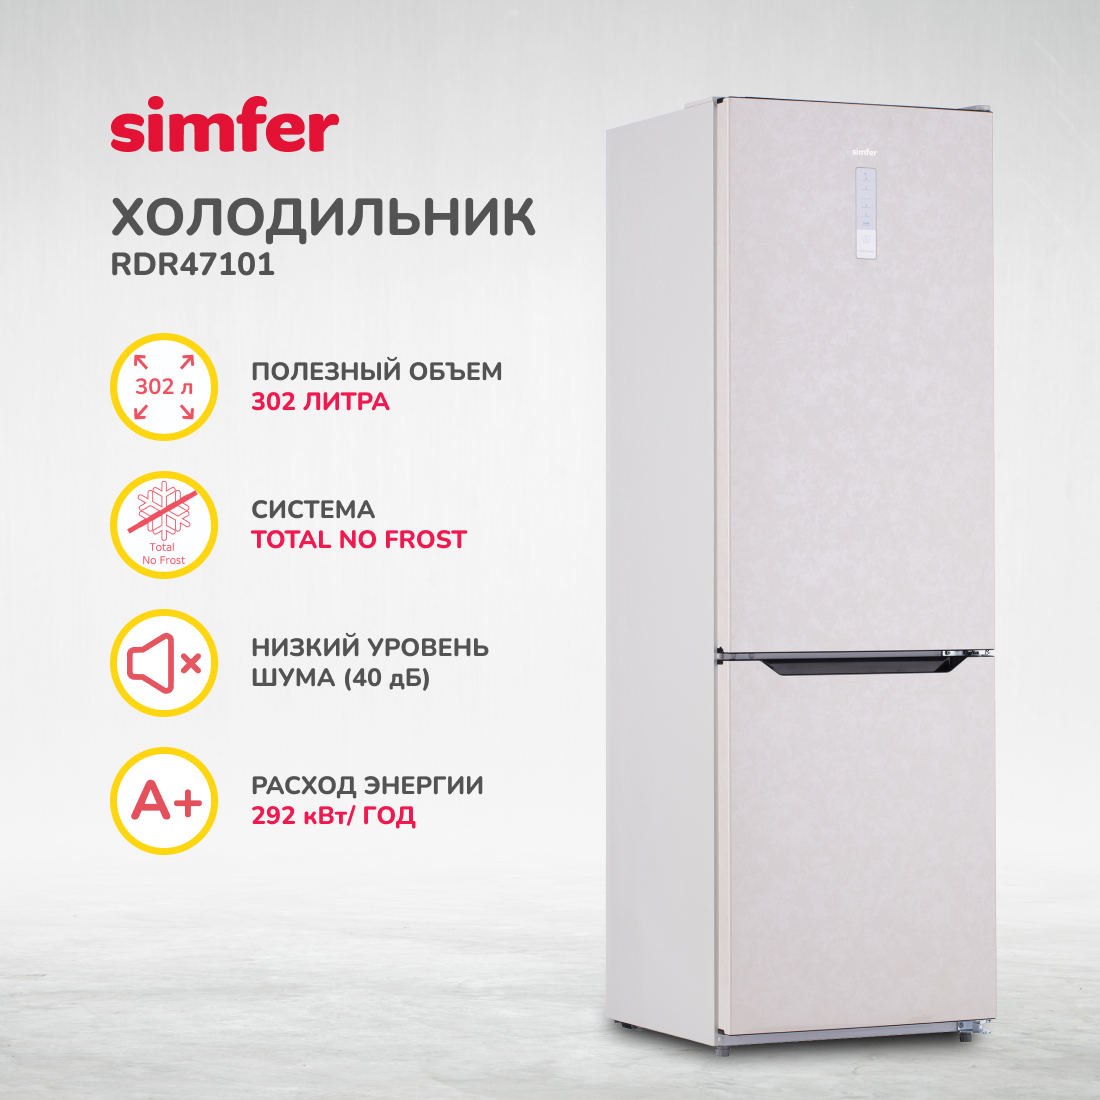 Холодильник Simfer RDR47101, No Frost, двухкамерный, 302 л холодильник simfer rdw49101 no frost двухкамерный 321 л